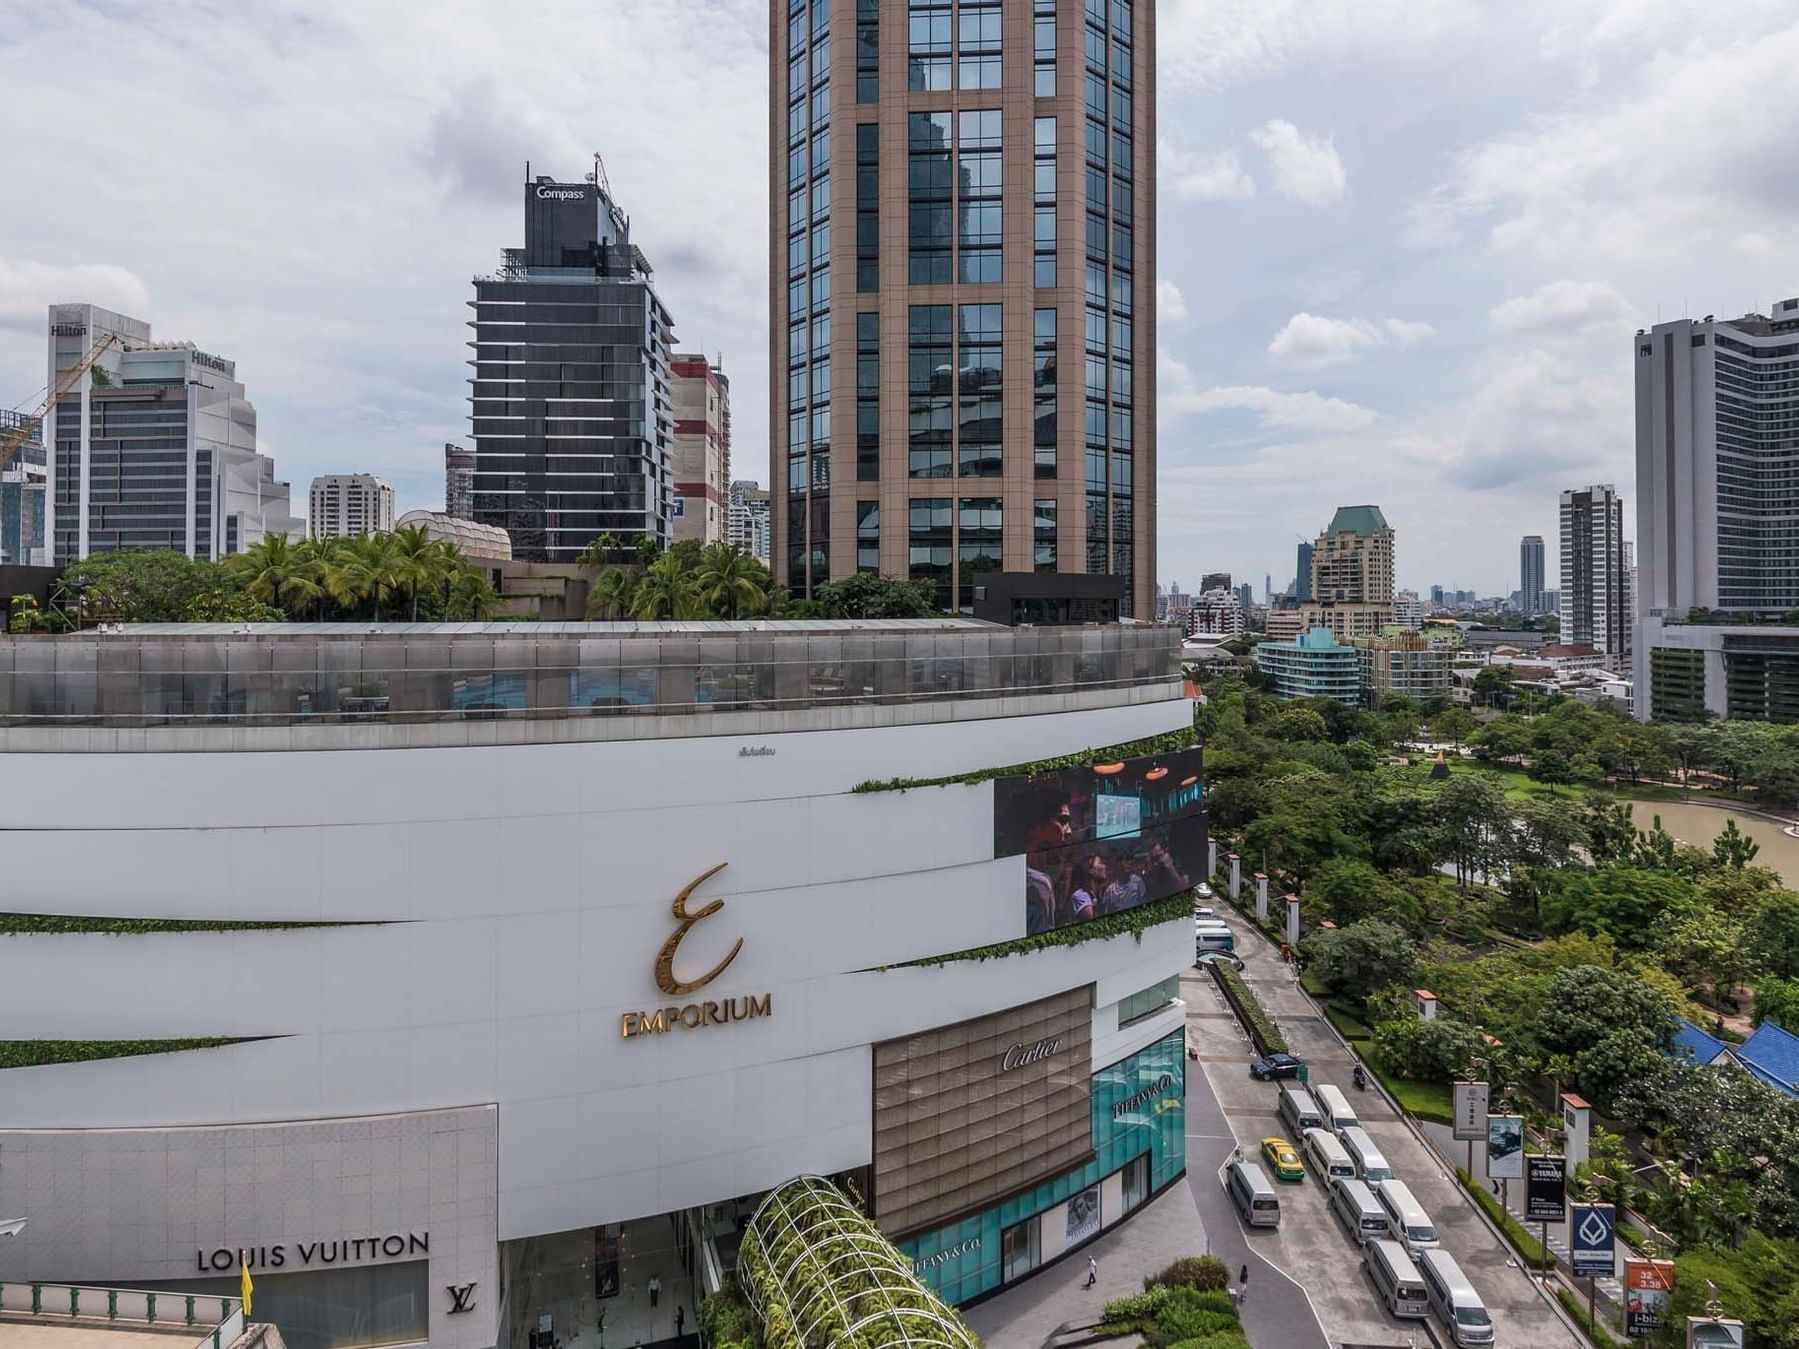 BANGKOK] Emporium Mall - Luxury Shopping Mall On Sukhumvit Road